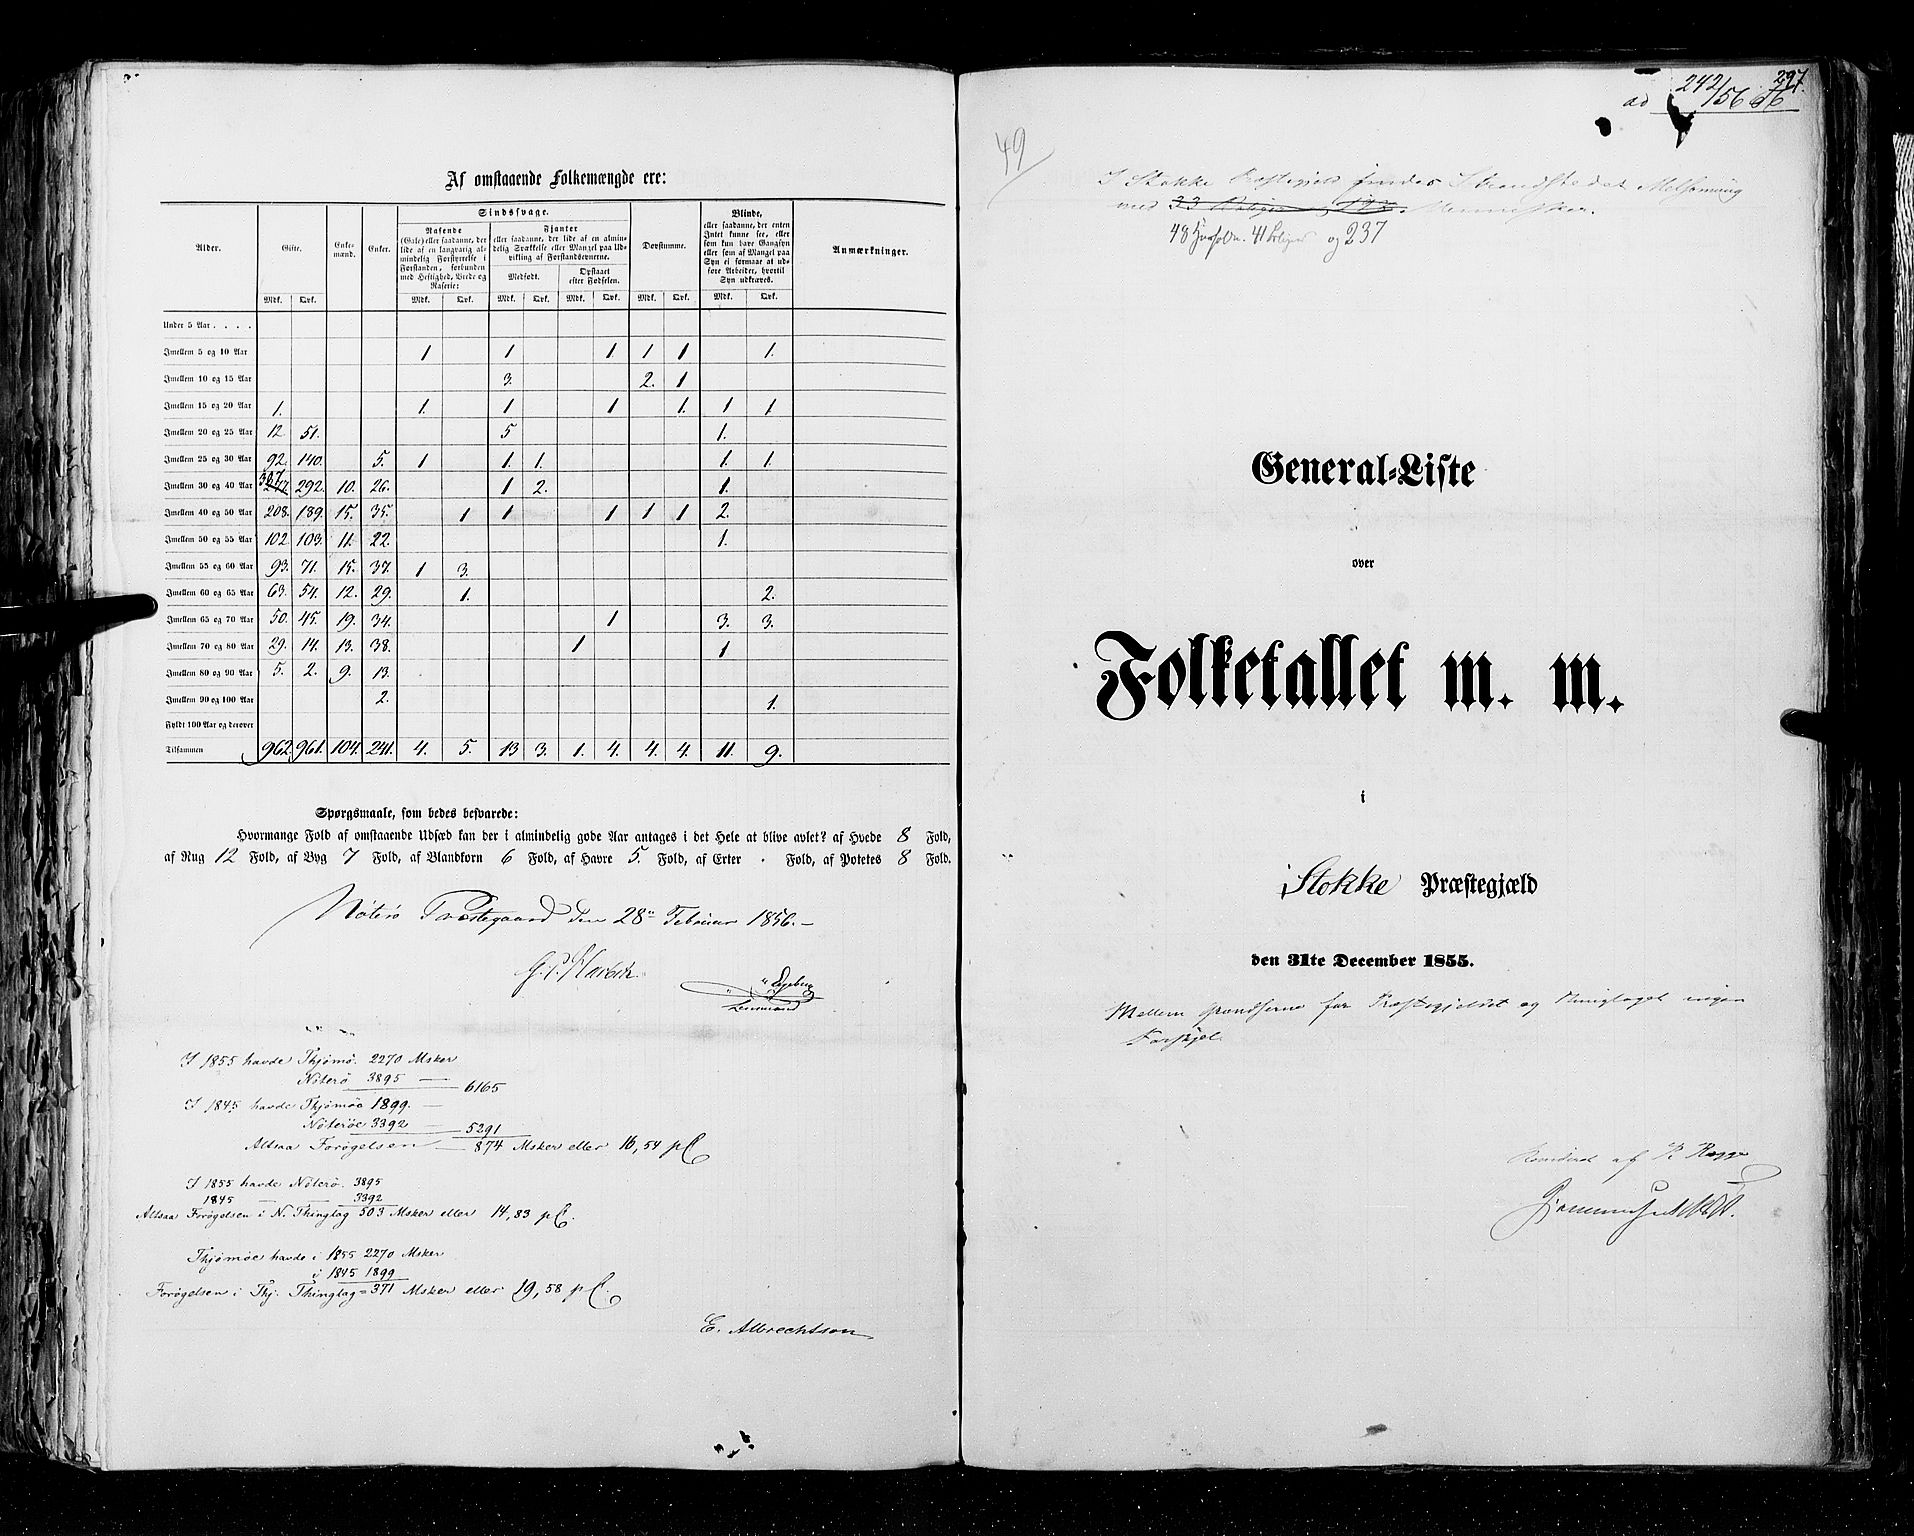 RA, Census 1855, vol. 2: Kristians amt, Buskerud amt og Jarlsberg og Larvik amt, 1855, p. 297